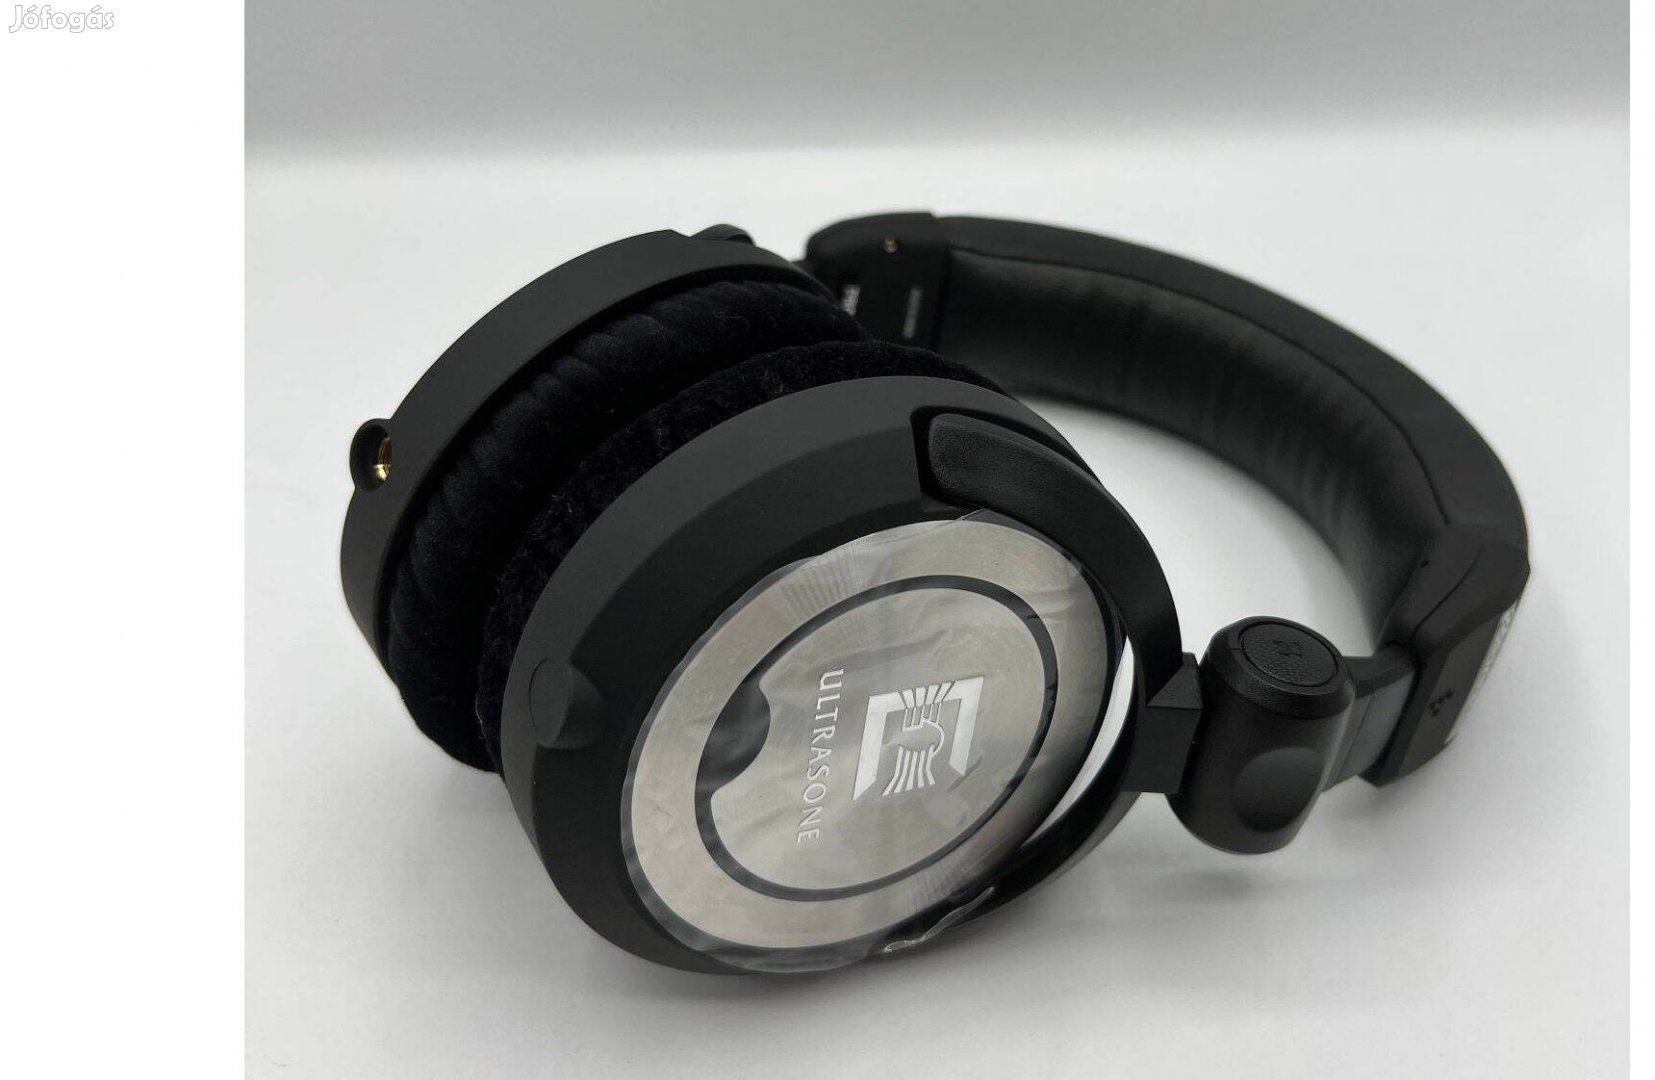 Ultrasone Pro 900i prémium fejhallgató, fekete/szürke, újszerű